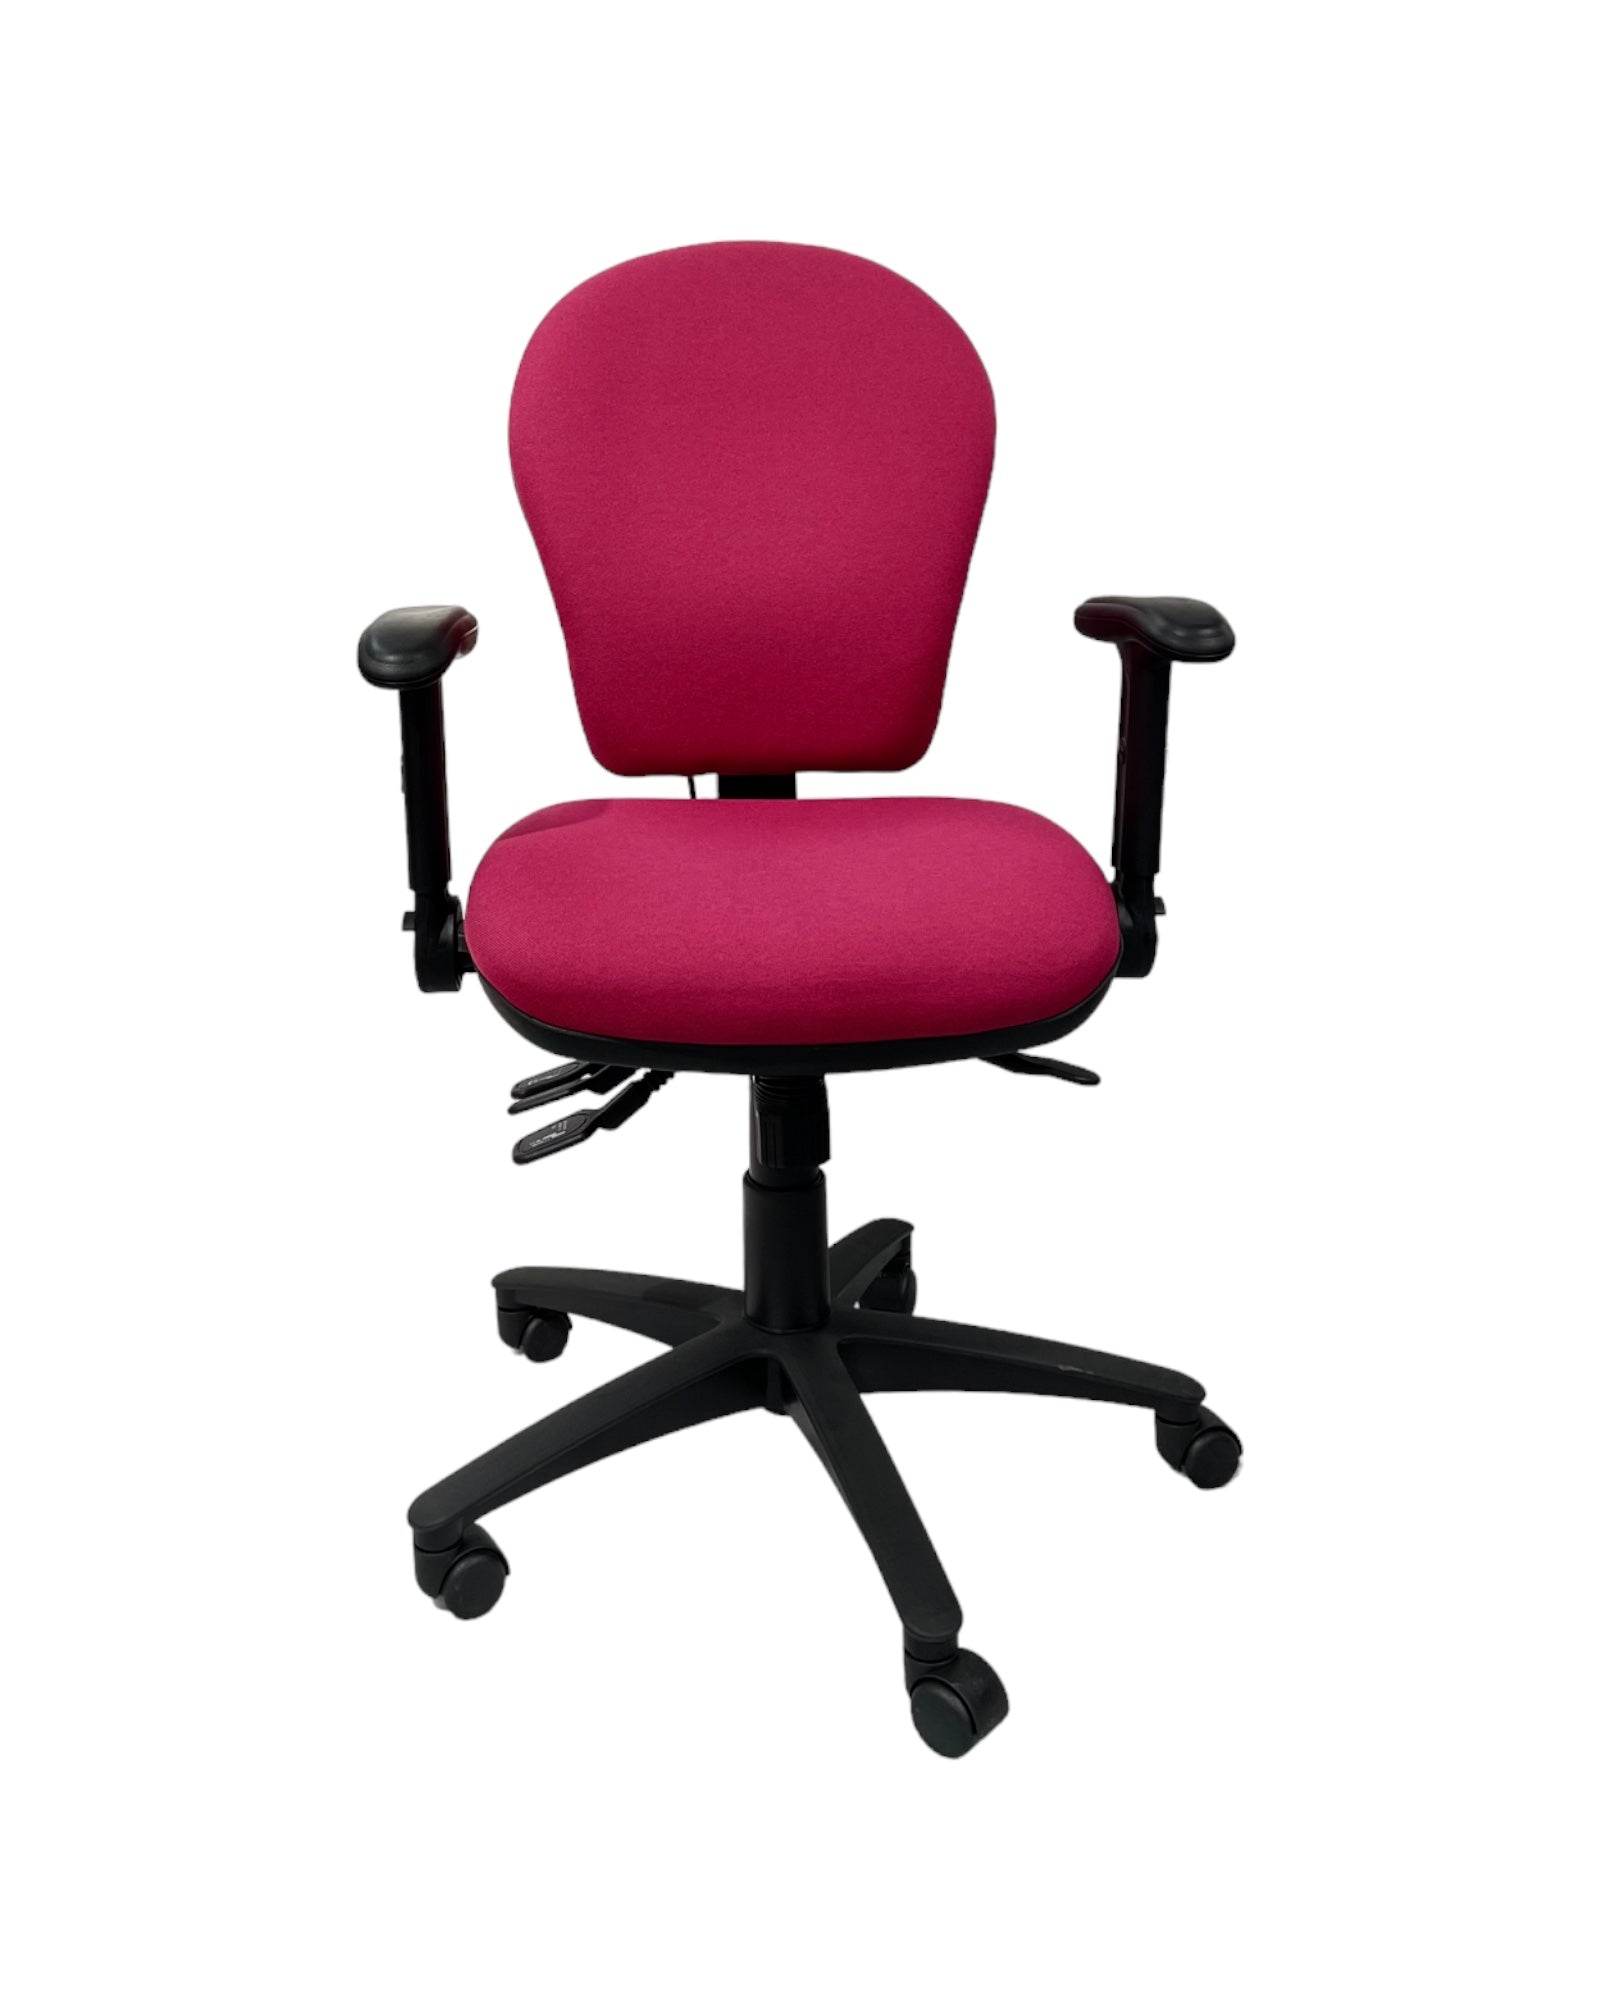 Ergo 1 Upholstered Operator Chair